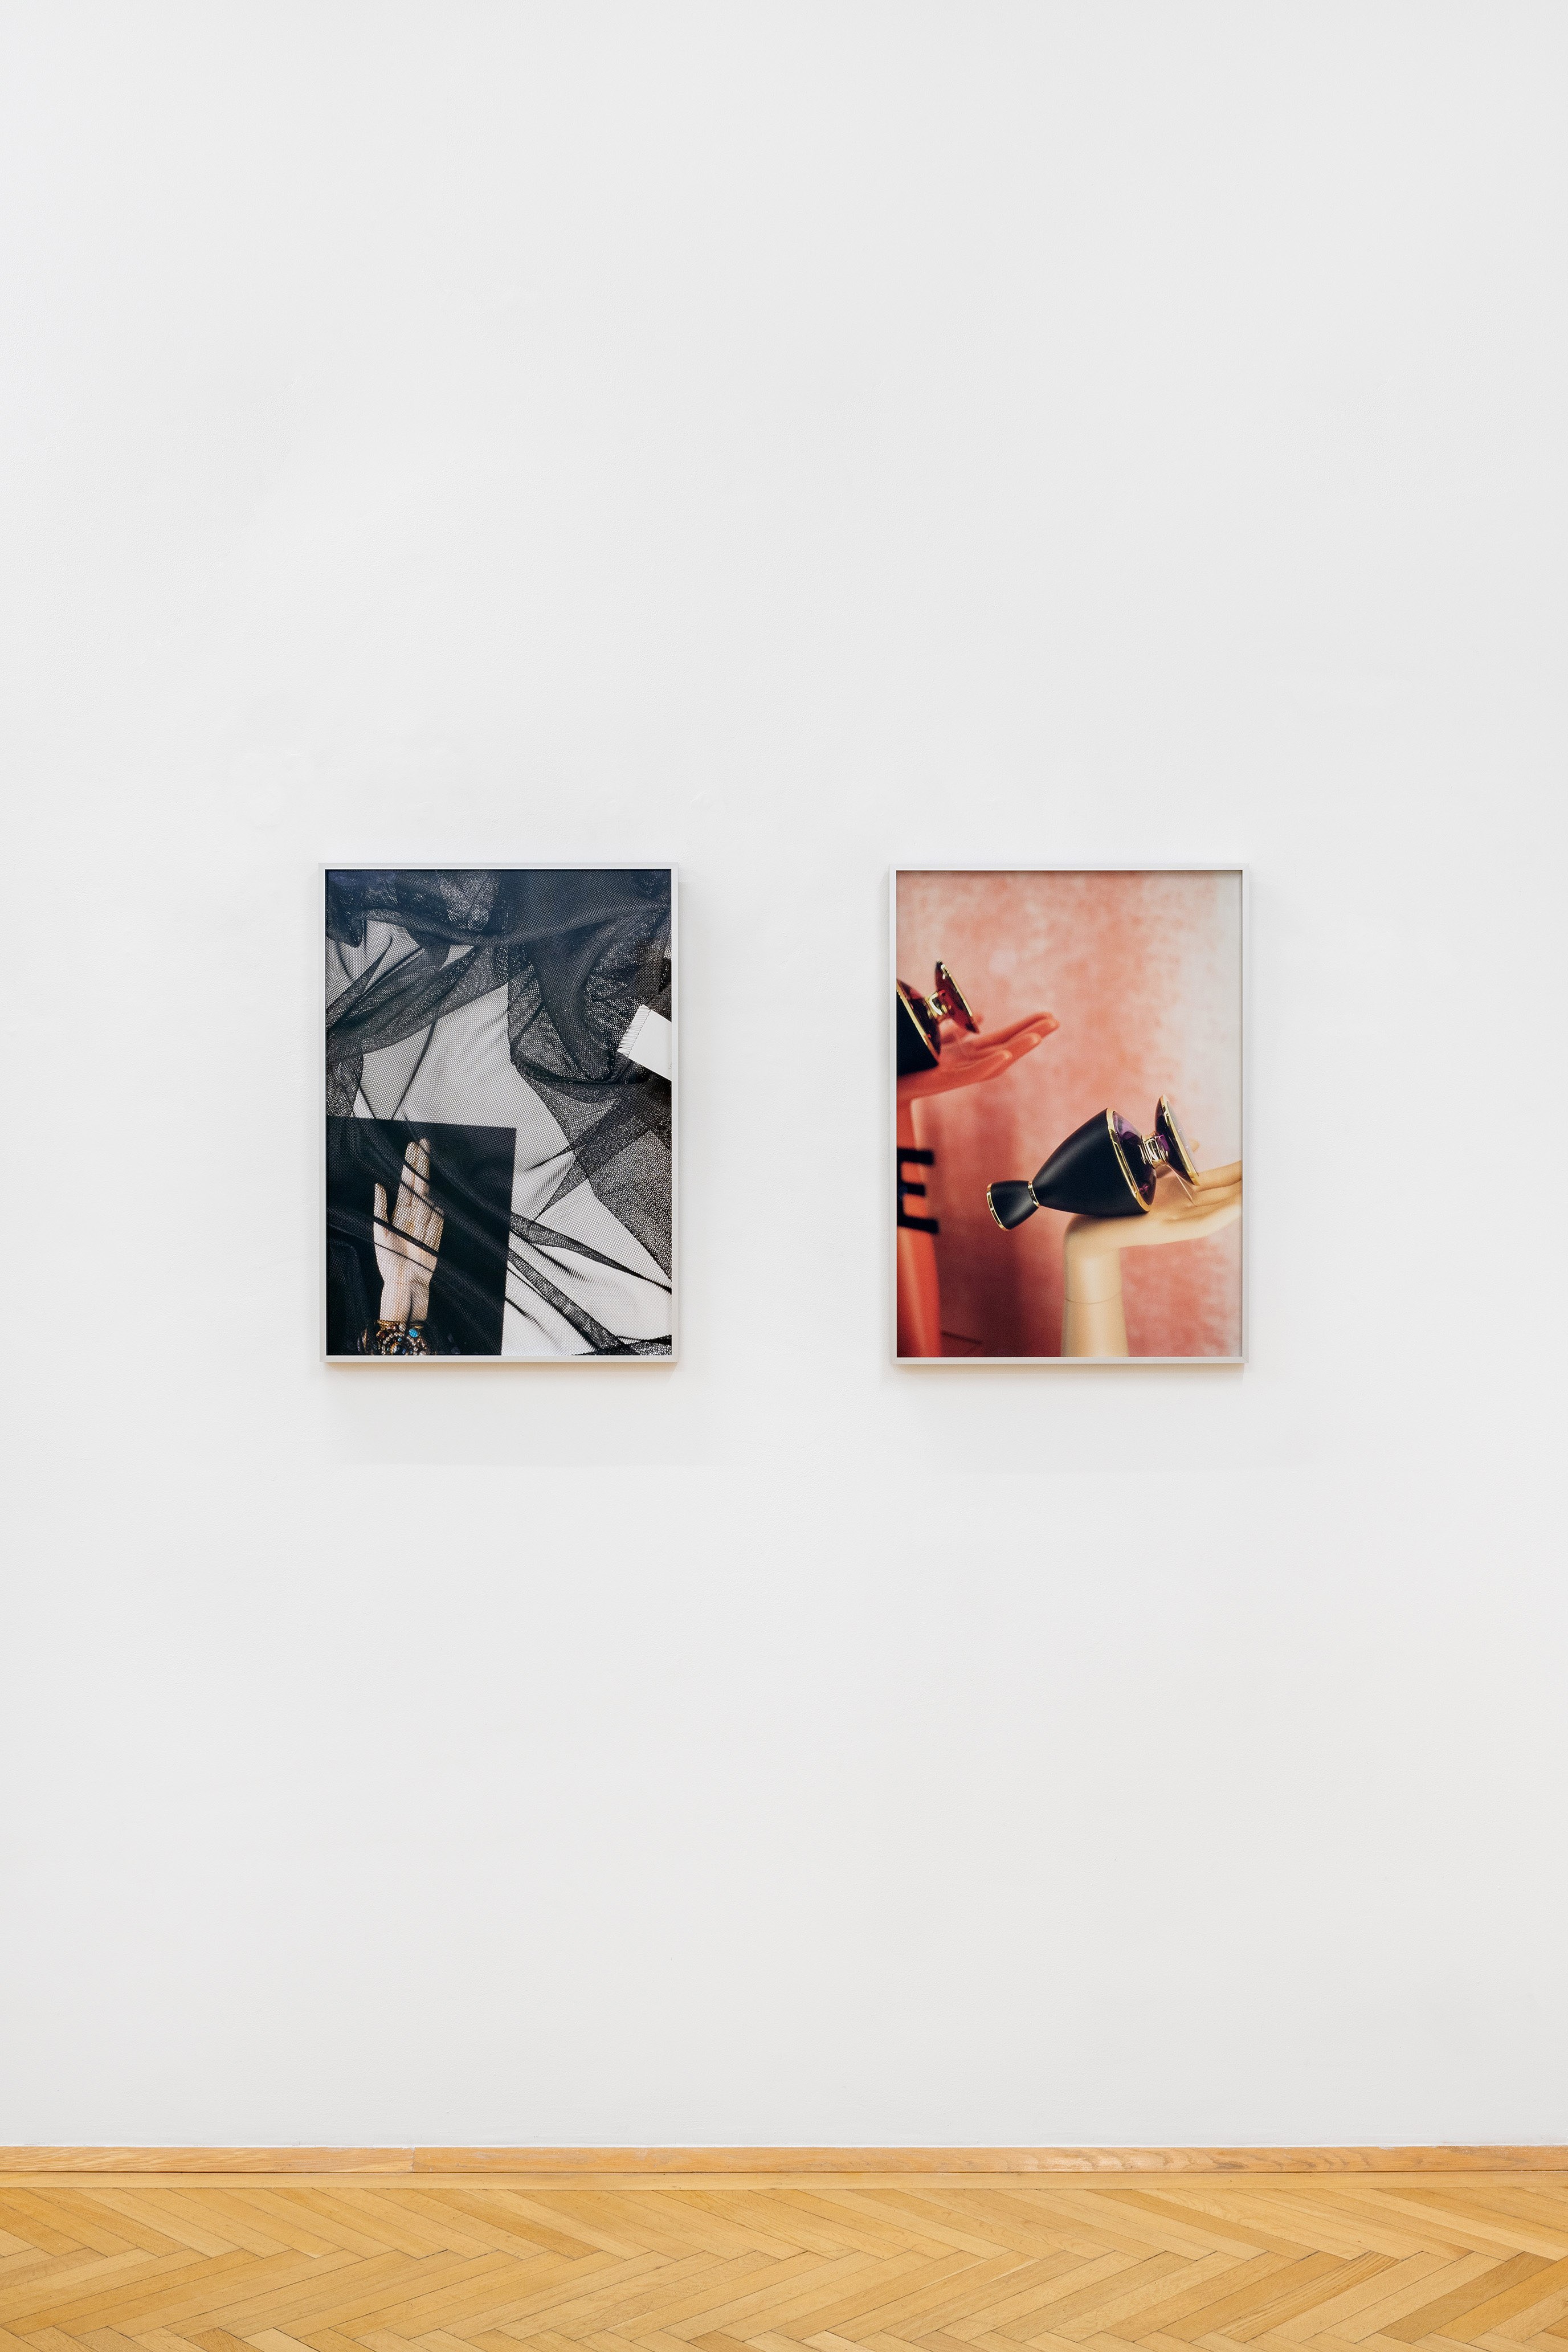  Laura Schawelka: Untitled (Main de Justice), 2019, C-Print, 70 x 50 cm, Ed. of 3 plus 2AP; Laura Schawelka: Untitled (Fondaco dei Tedeschi), 2019, C-Print, 70 x 50 cm, Ed. of 3 plus 2AP